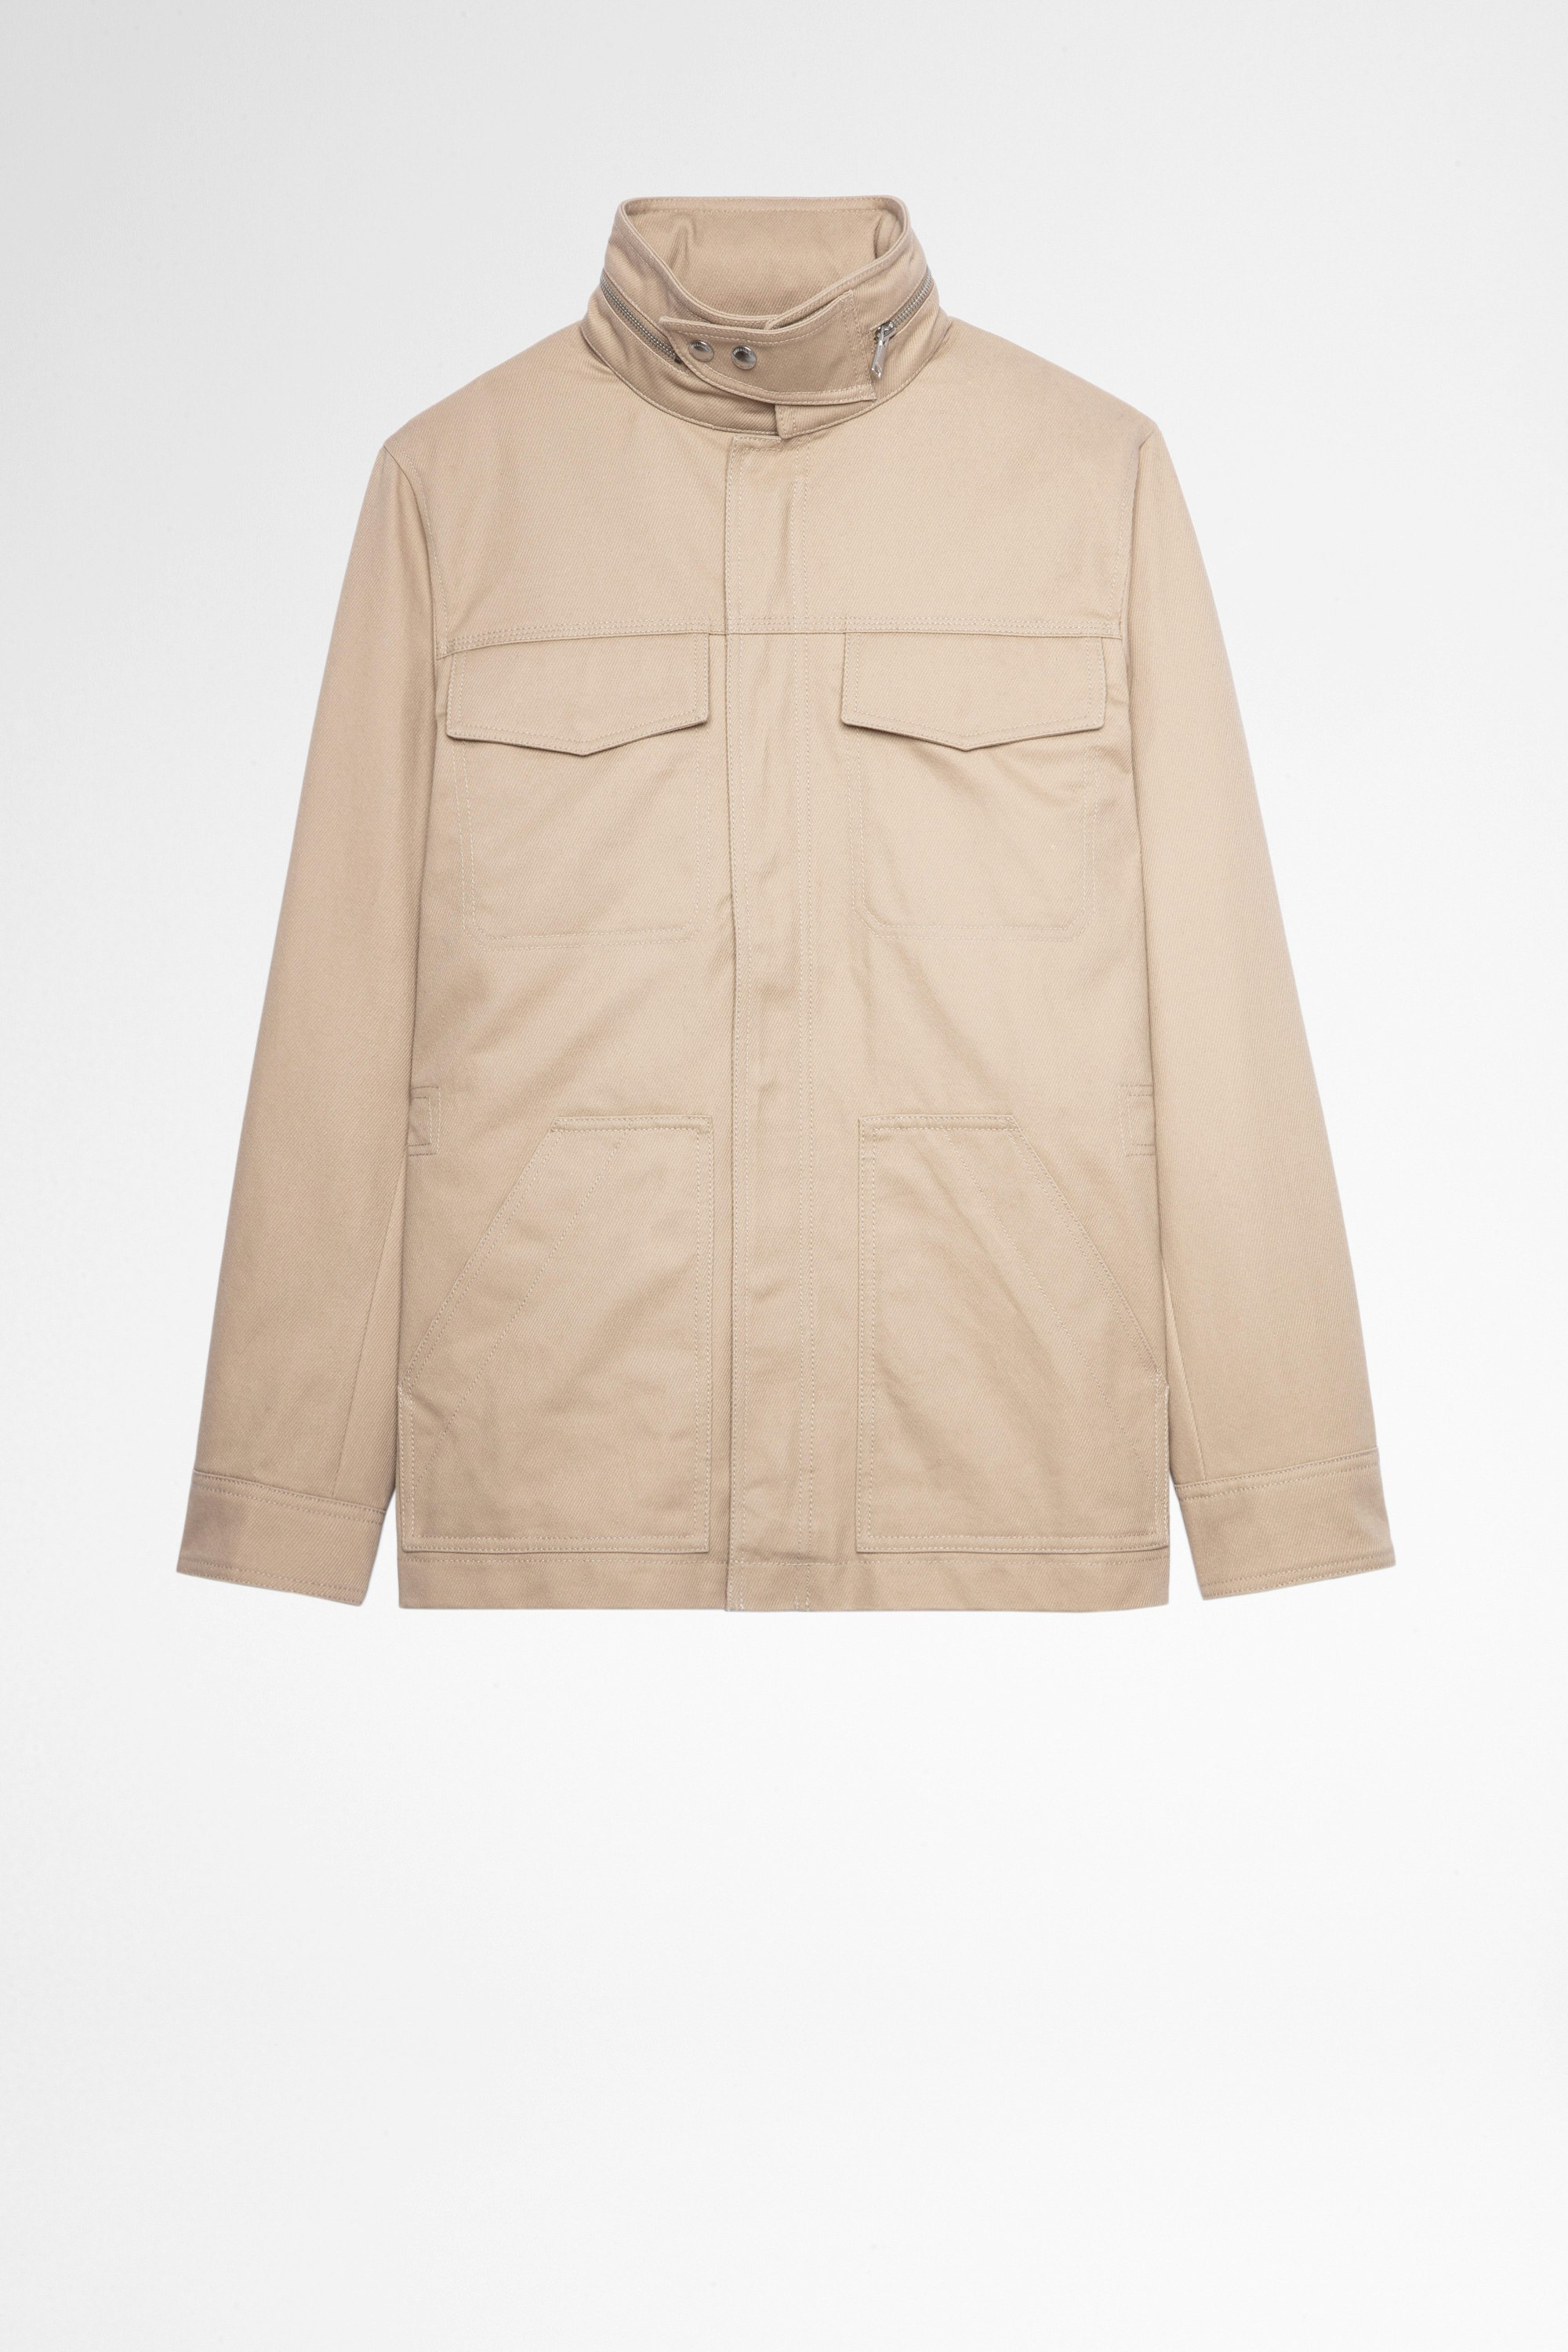 Bernie Jacket Men's beige cotton jacket with arrow pattern